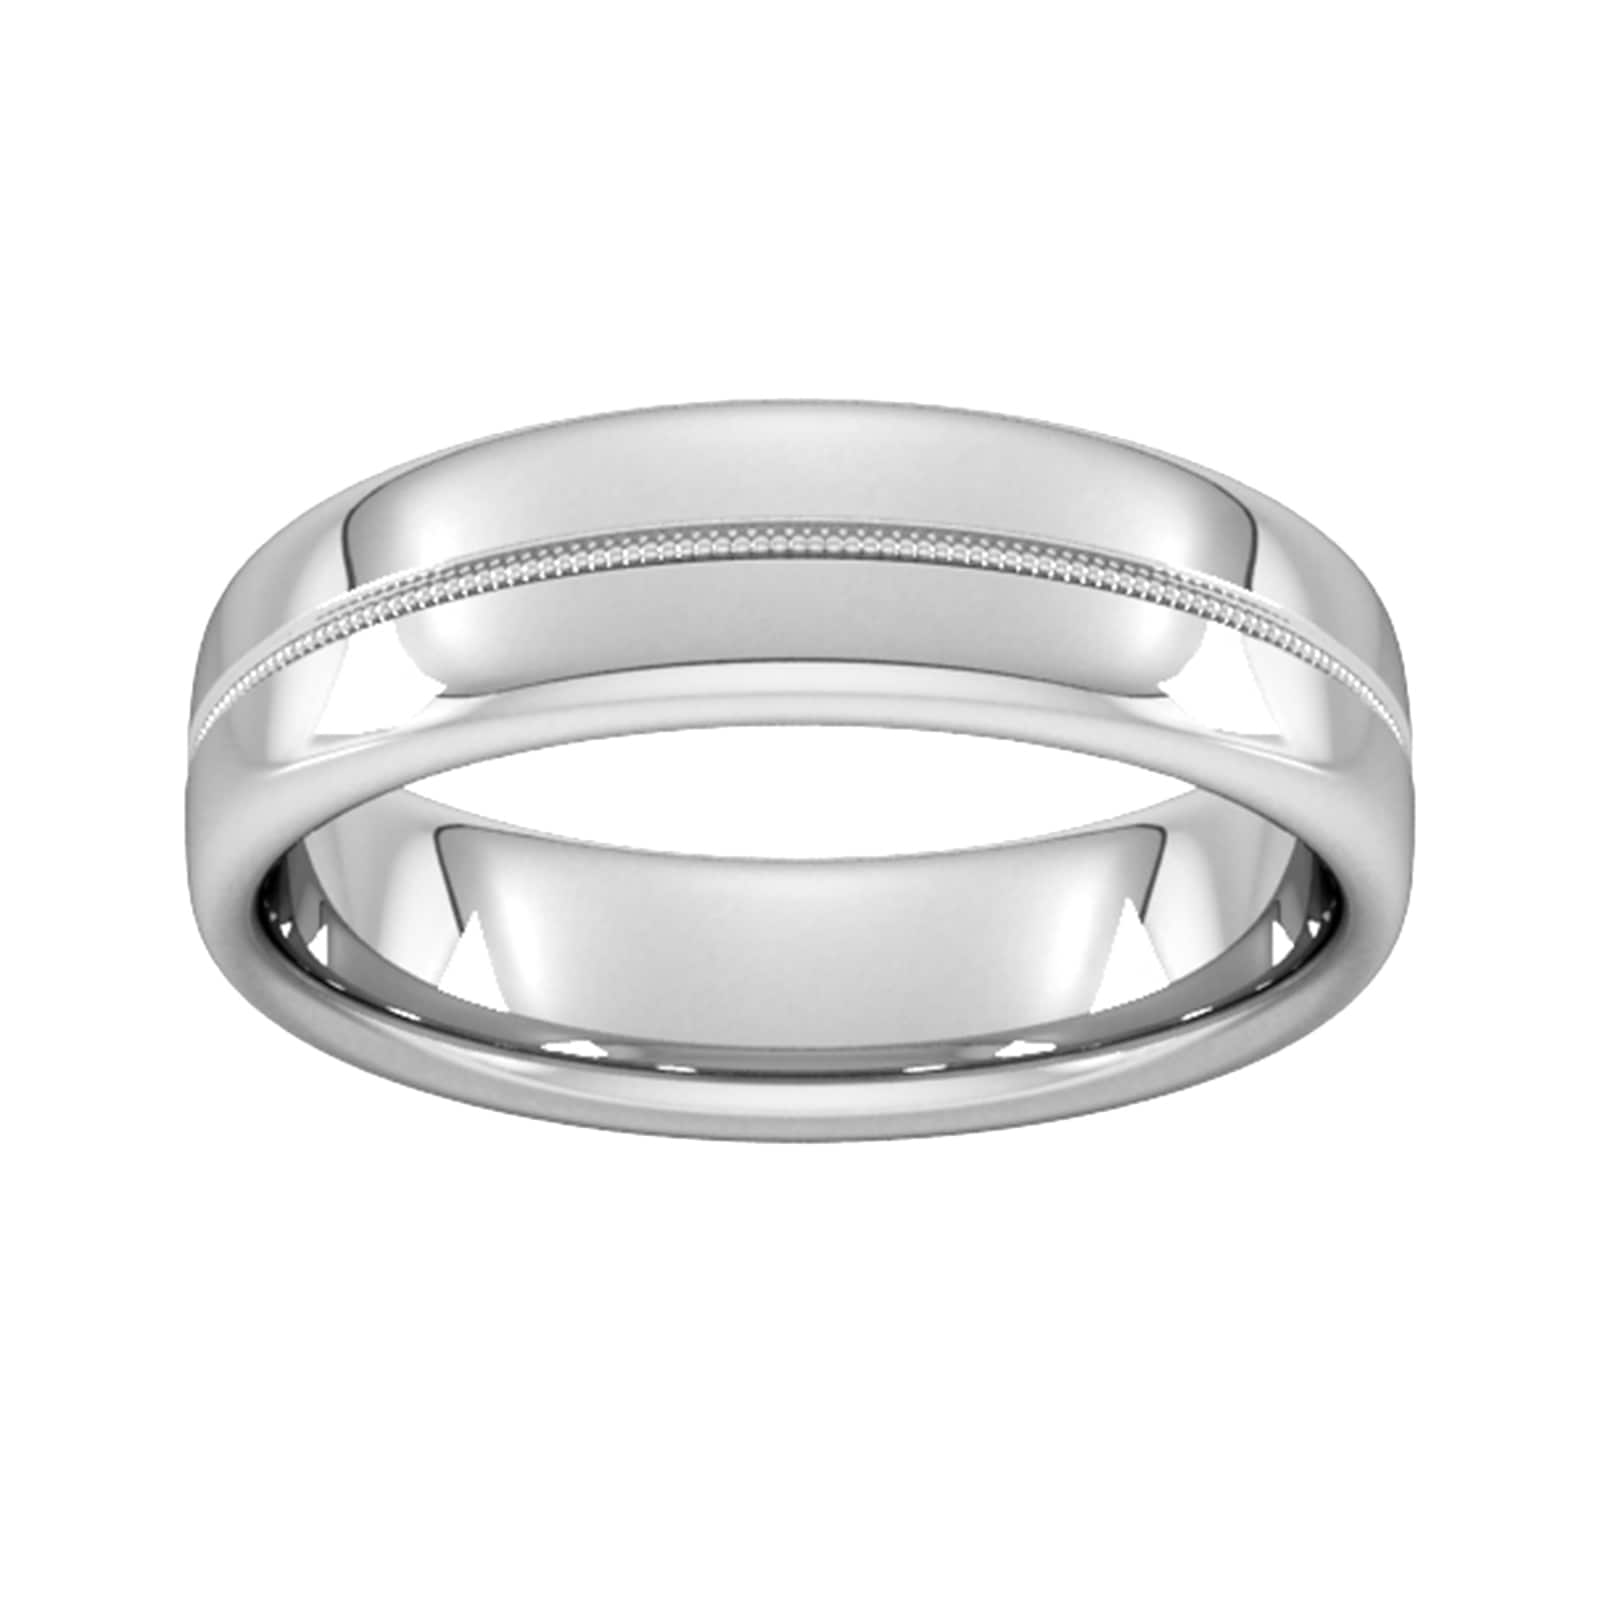 6mm Slight Court Heavy Milgrain Centre Wedding Ring In 18 Carat White Gold - Ring Size S